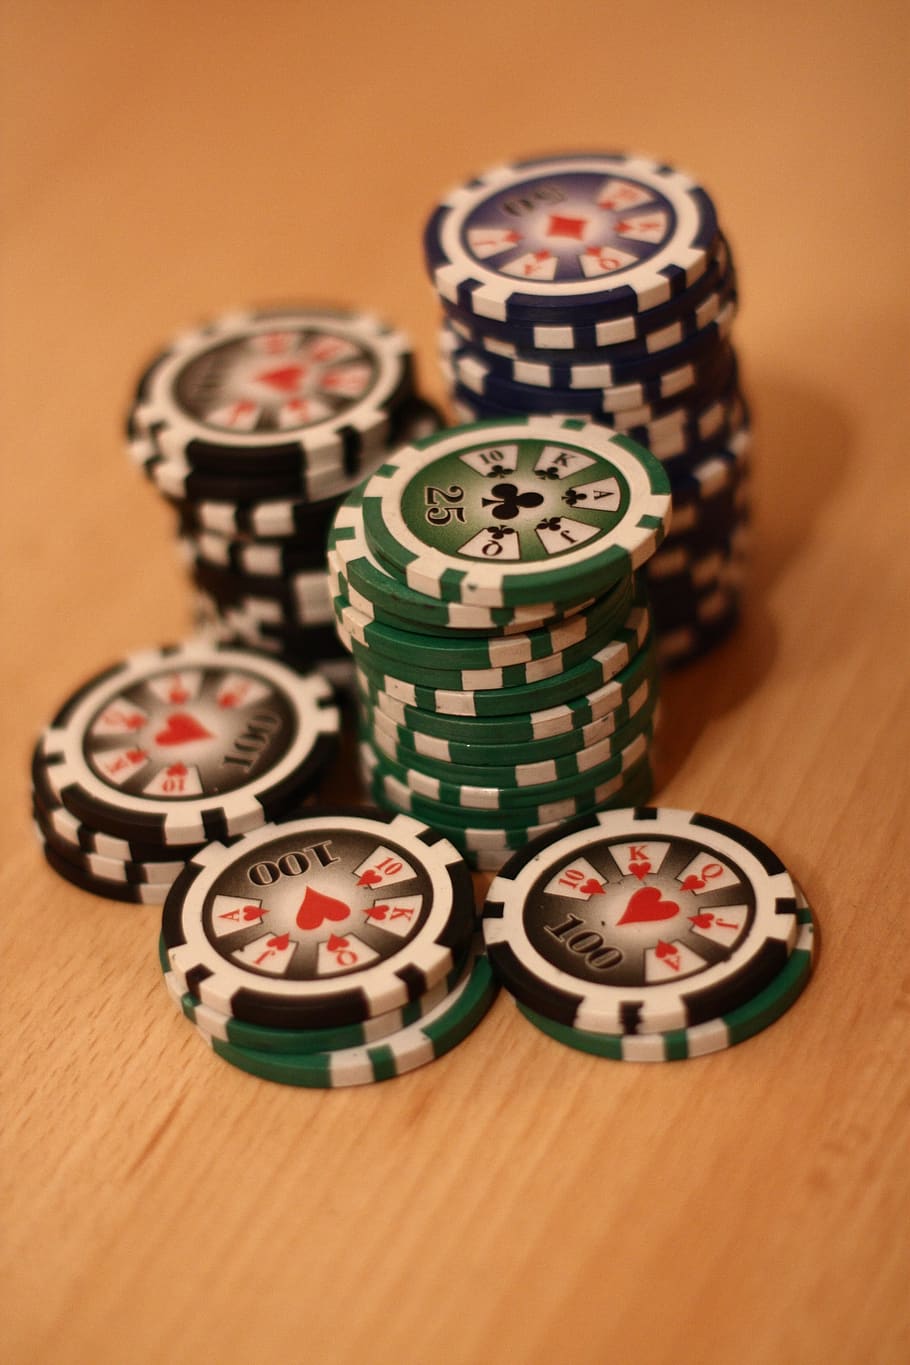 póker, ficha de póker, jugar póker, jugar, juegos de azar, ganar, casino, juego de cartas, riesgo, beneficio